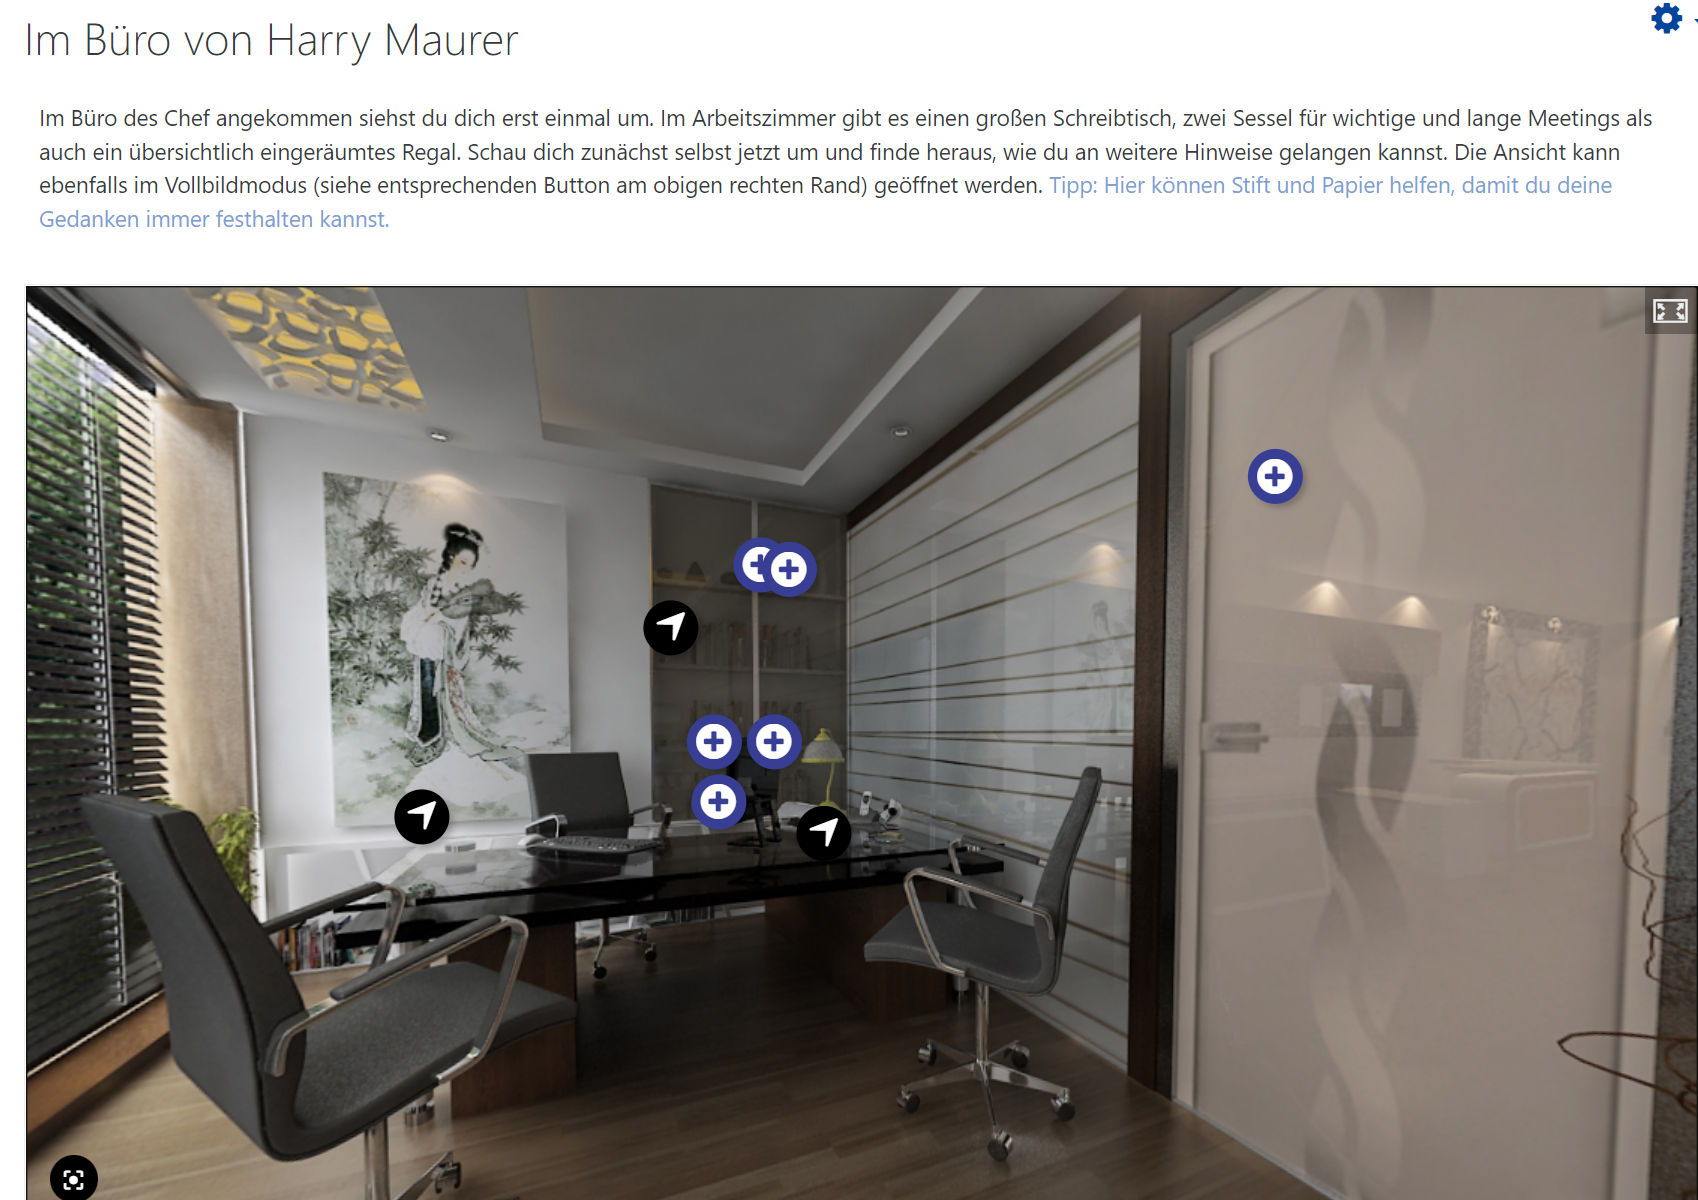 360° Grad Ansicht eines Büros mit Buttons für weitere Informationen